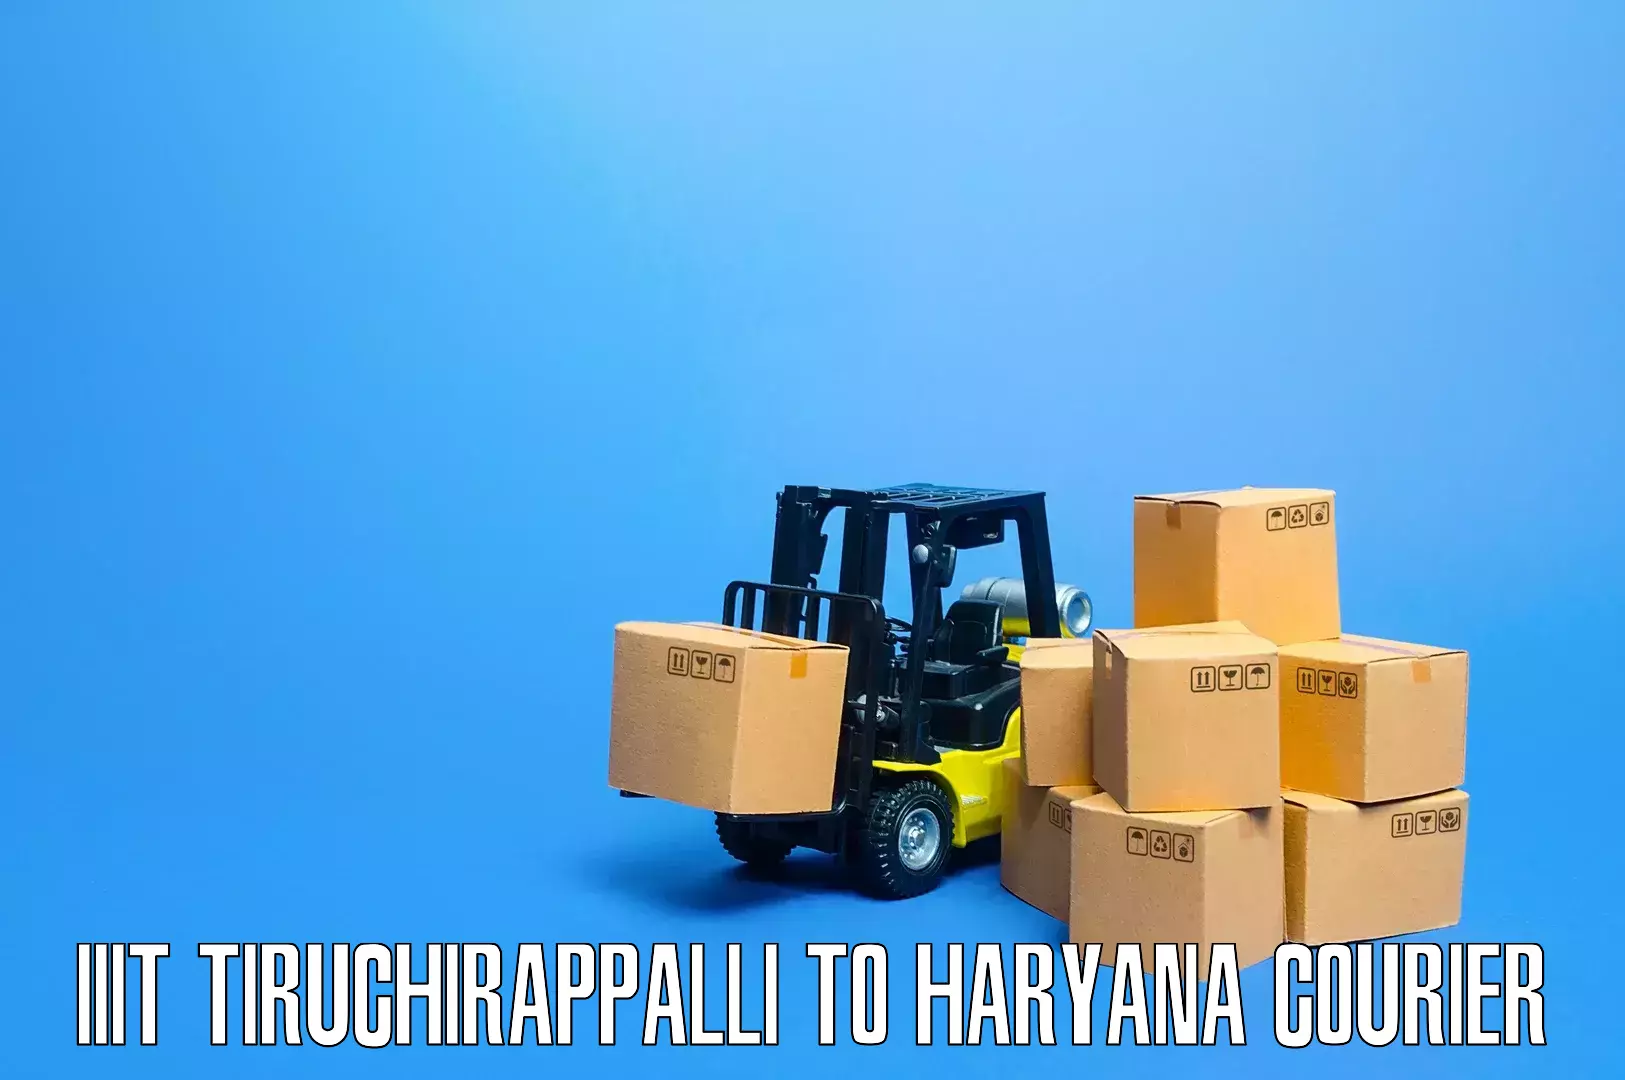 Furniture transport specialists IIIT Tiruchirappalli to Assandh